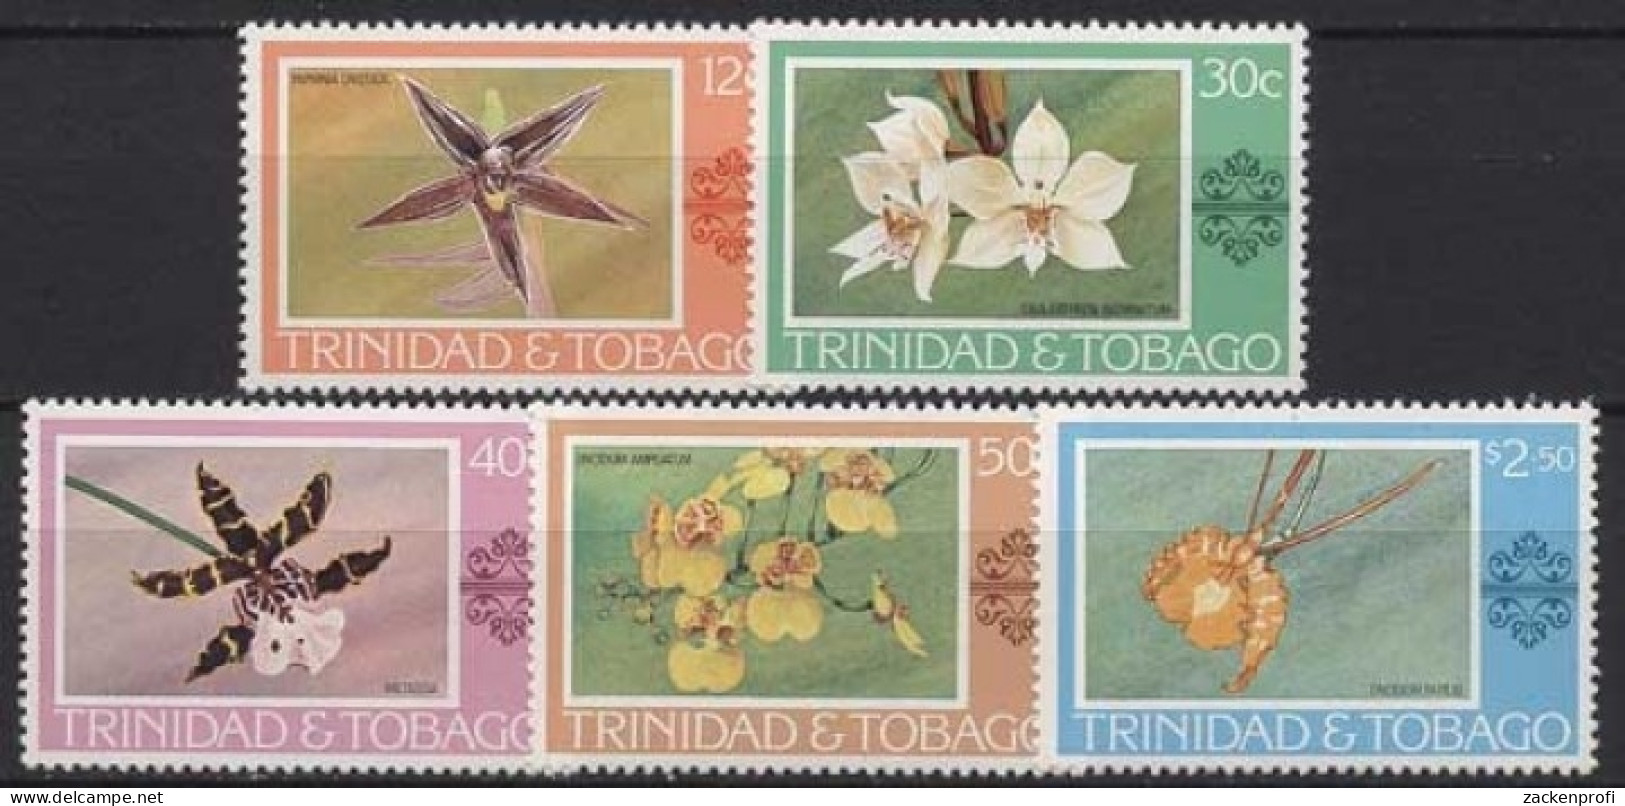 Trinidad Und Tobago 1978 Pflanzen Blumen Orchideen 367/71 Postfrisch - Trindad & Tobago (1962-...)